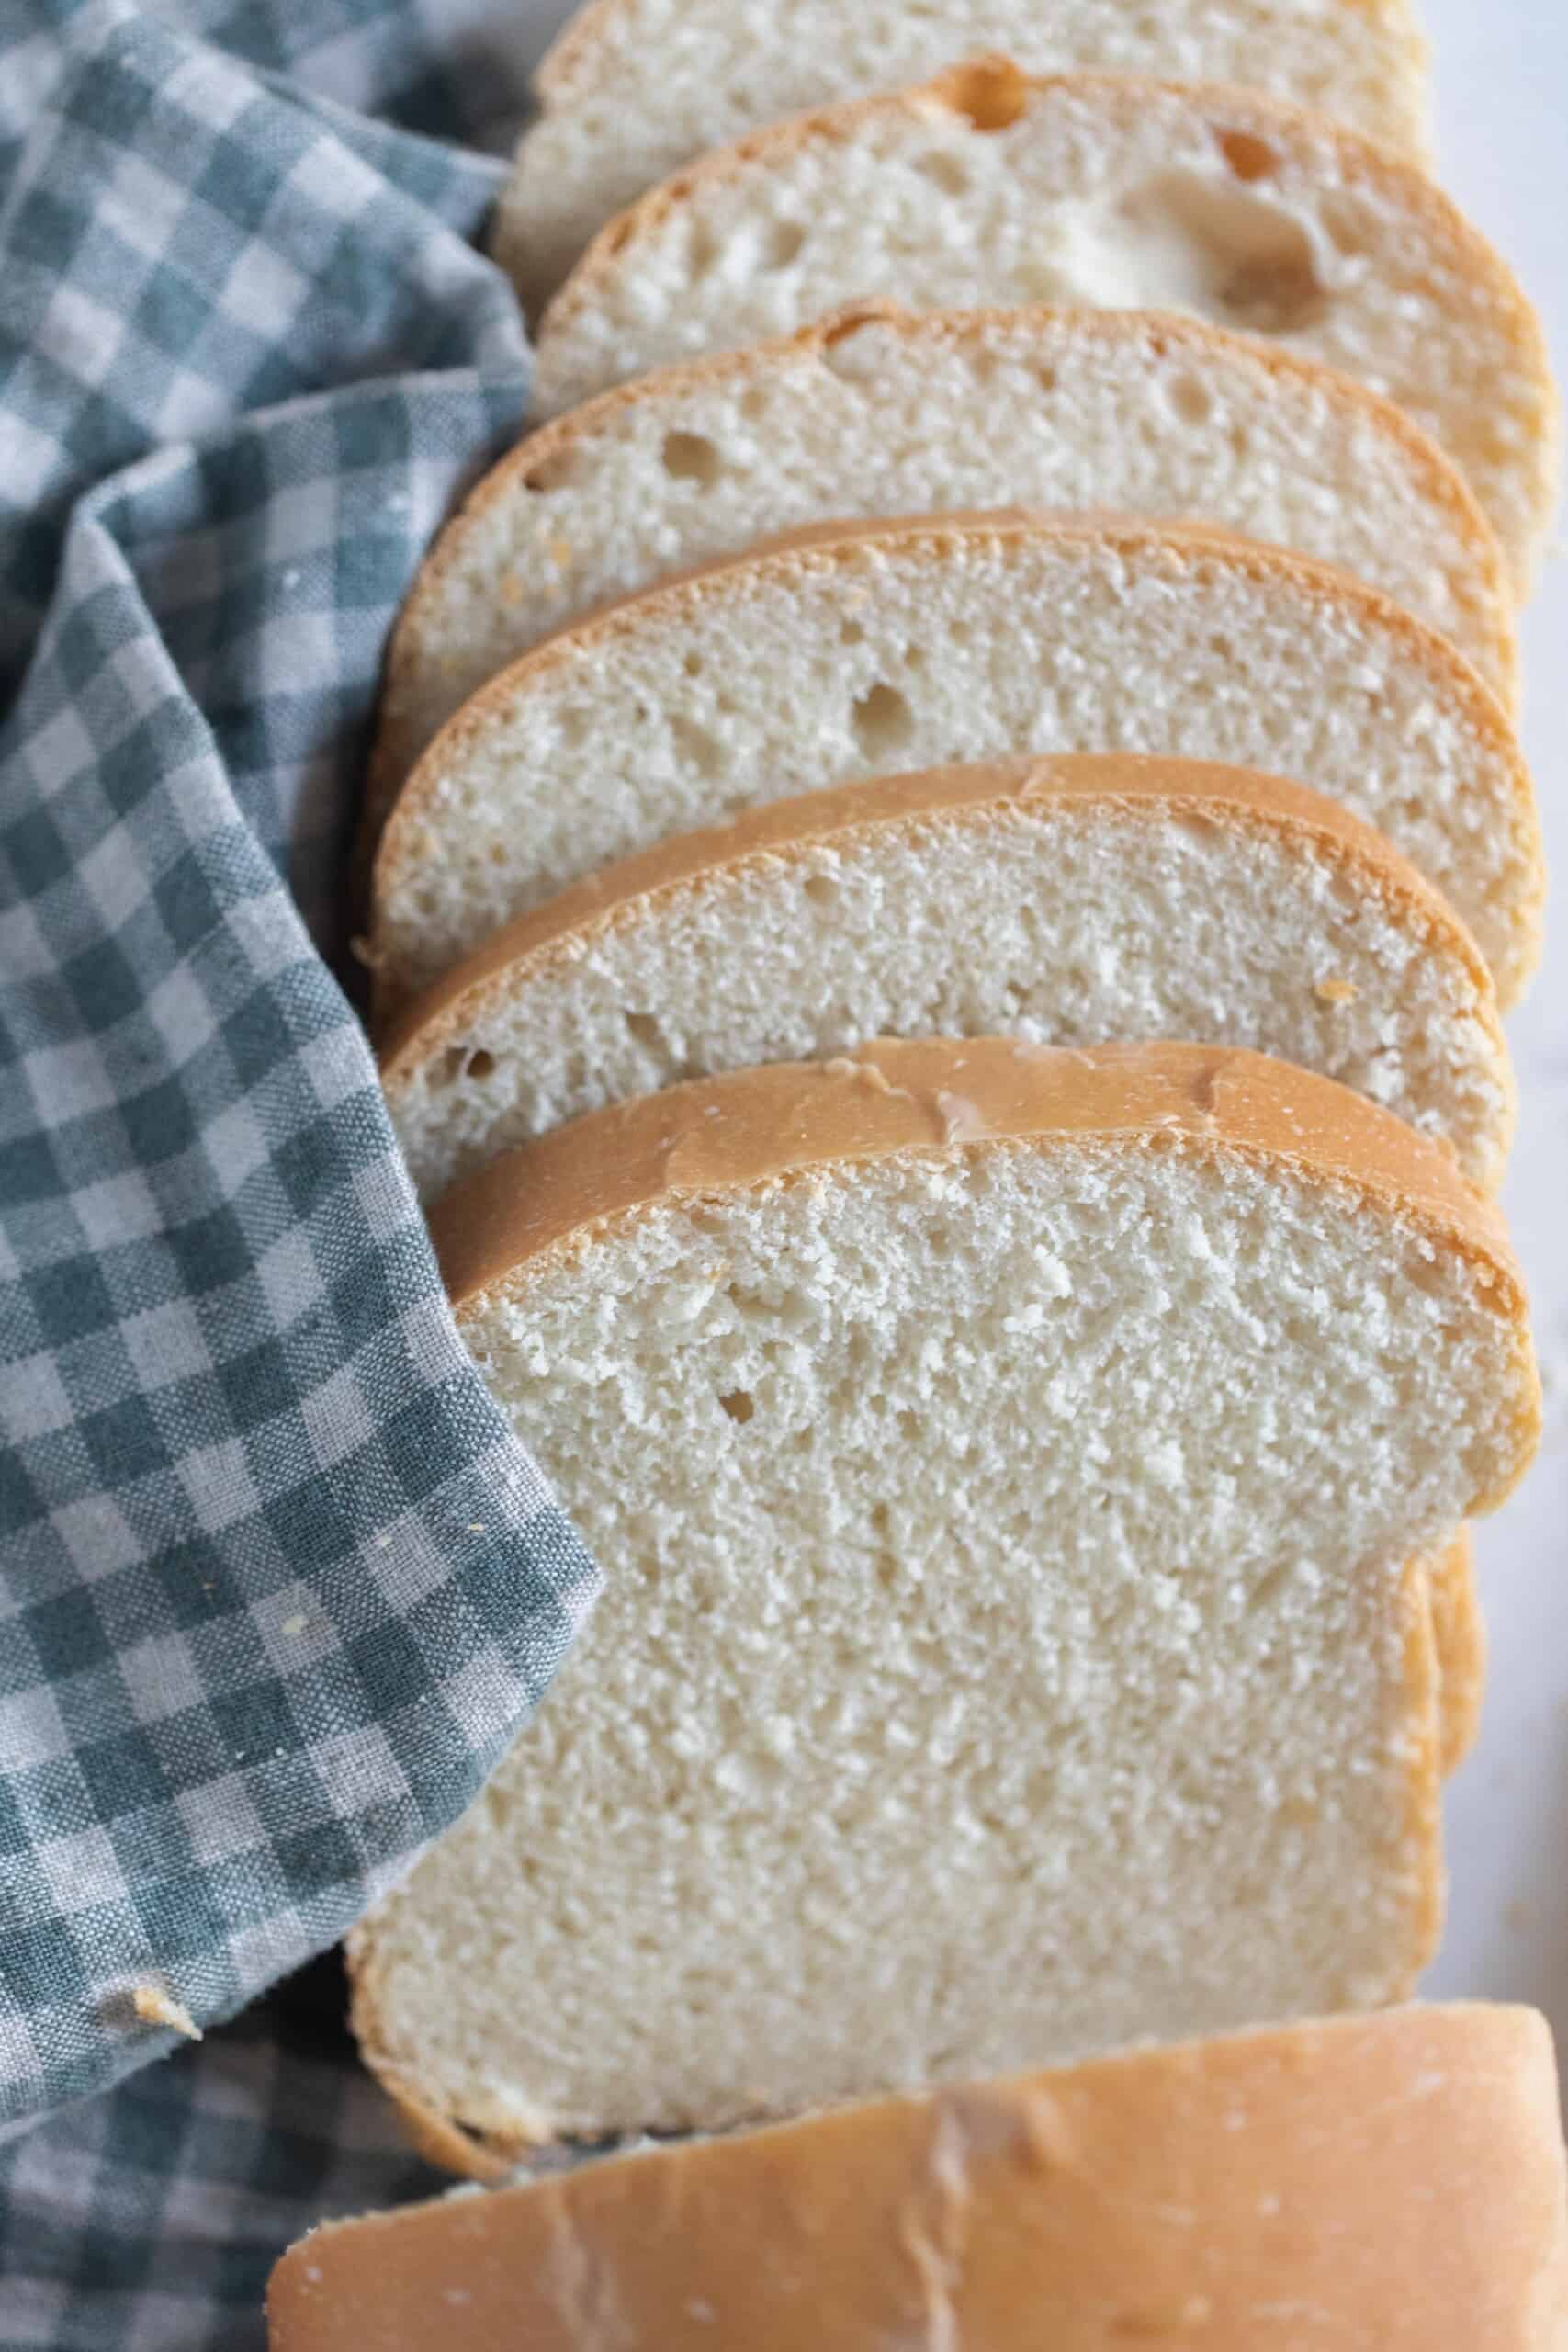 Buttermilk Spoon Bread